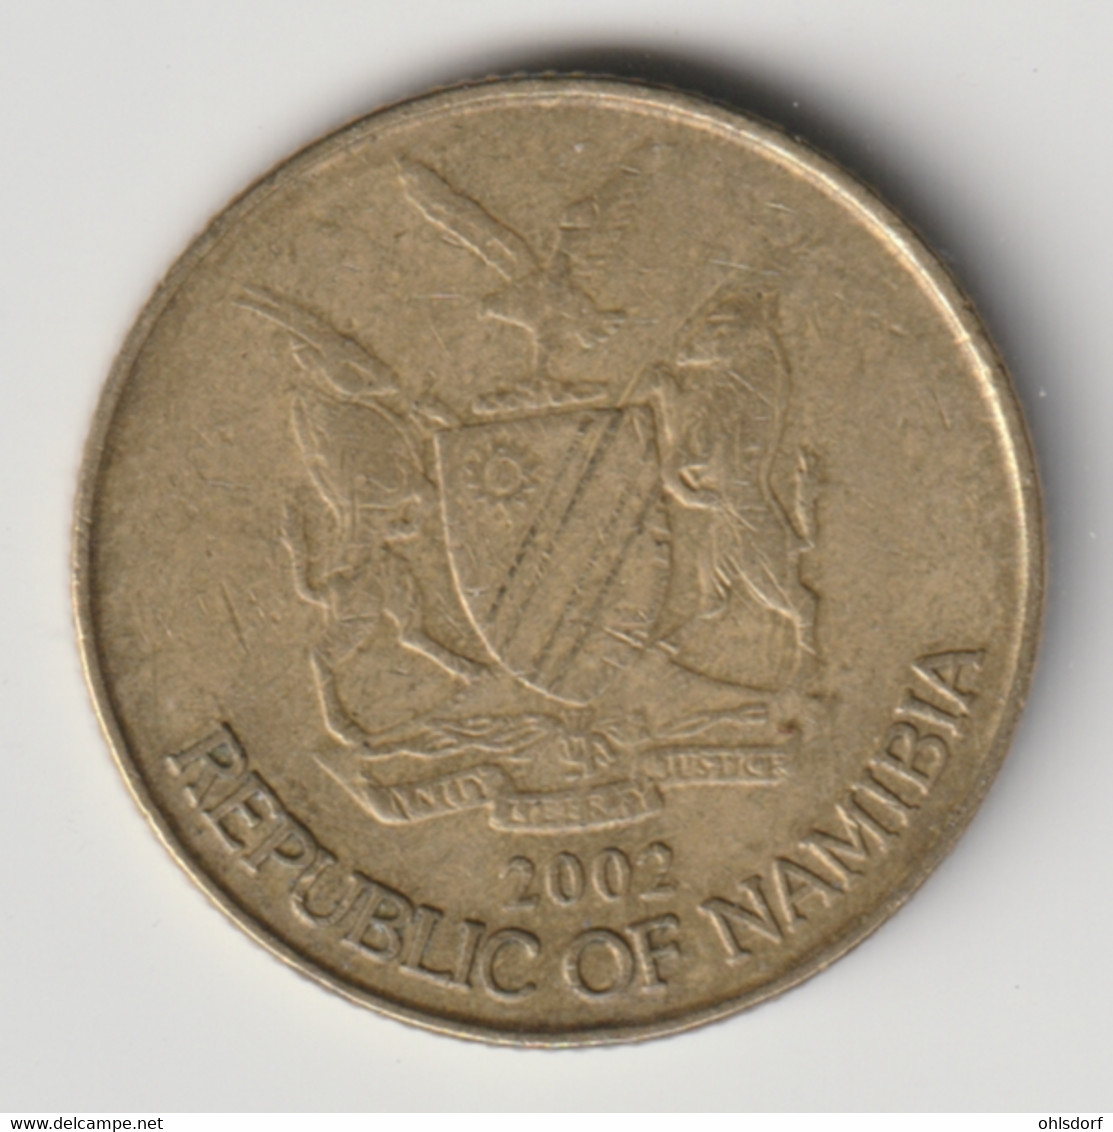 NAMIBIA 2002: 1 Dollar, KM 4 - Namibië